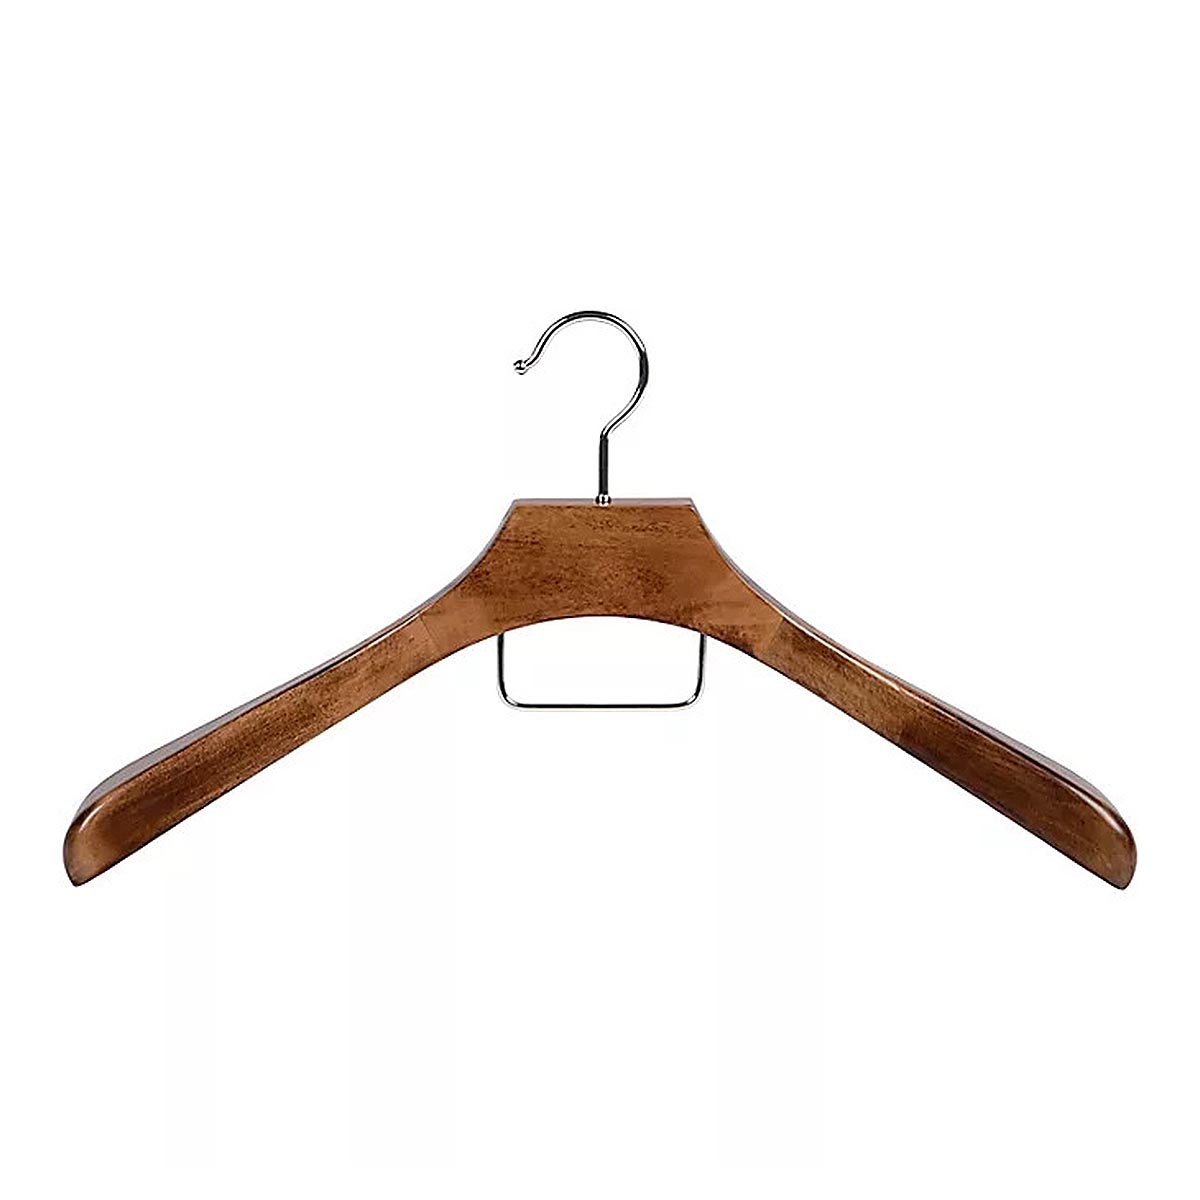 China Wood Coat Hanger Deluxe Walnut Brown Wide Shoulder Suit